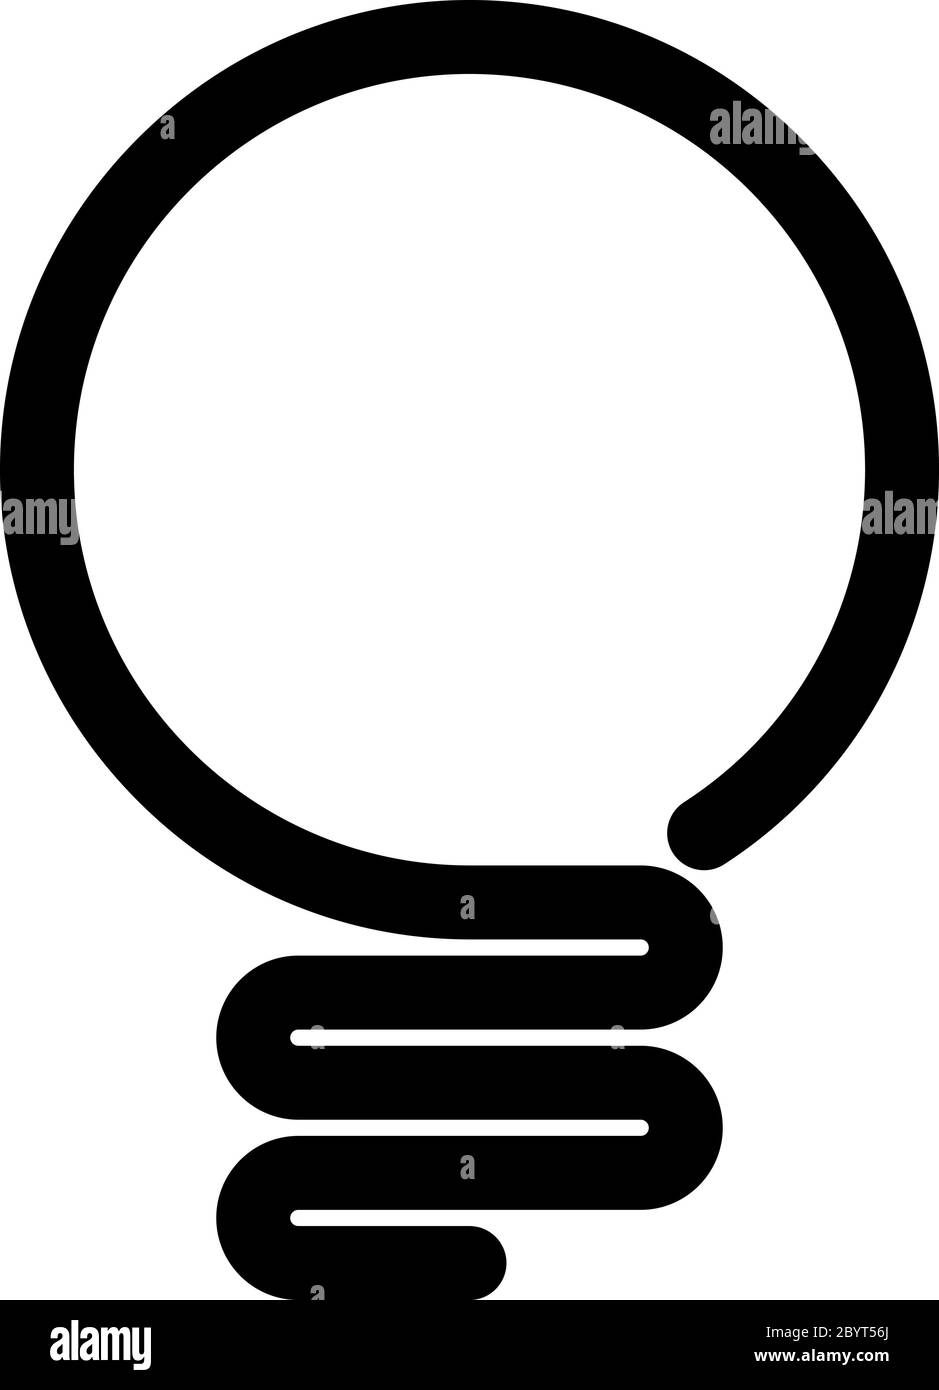 Icona lampadina. Semplice simbolo di linea nera isolato su sfondo bianco. Luce, idea o pensare koncept. Elemento di progettazione vettoriale moderno. Illustrazione Vettoriale